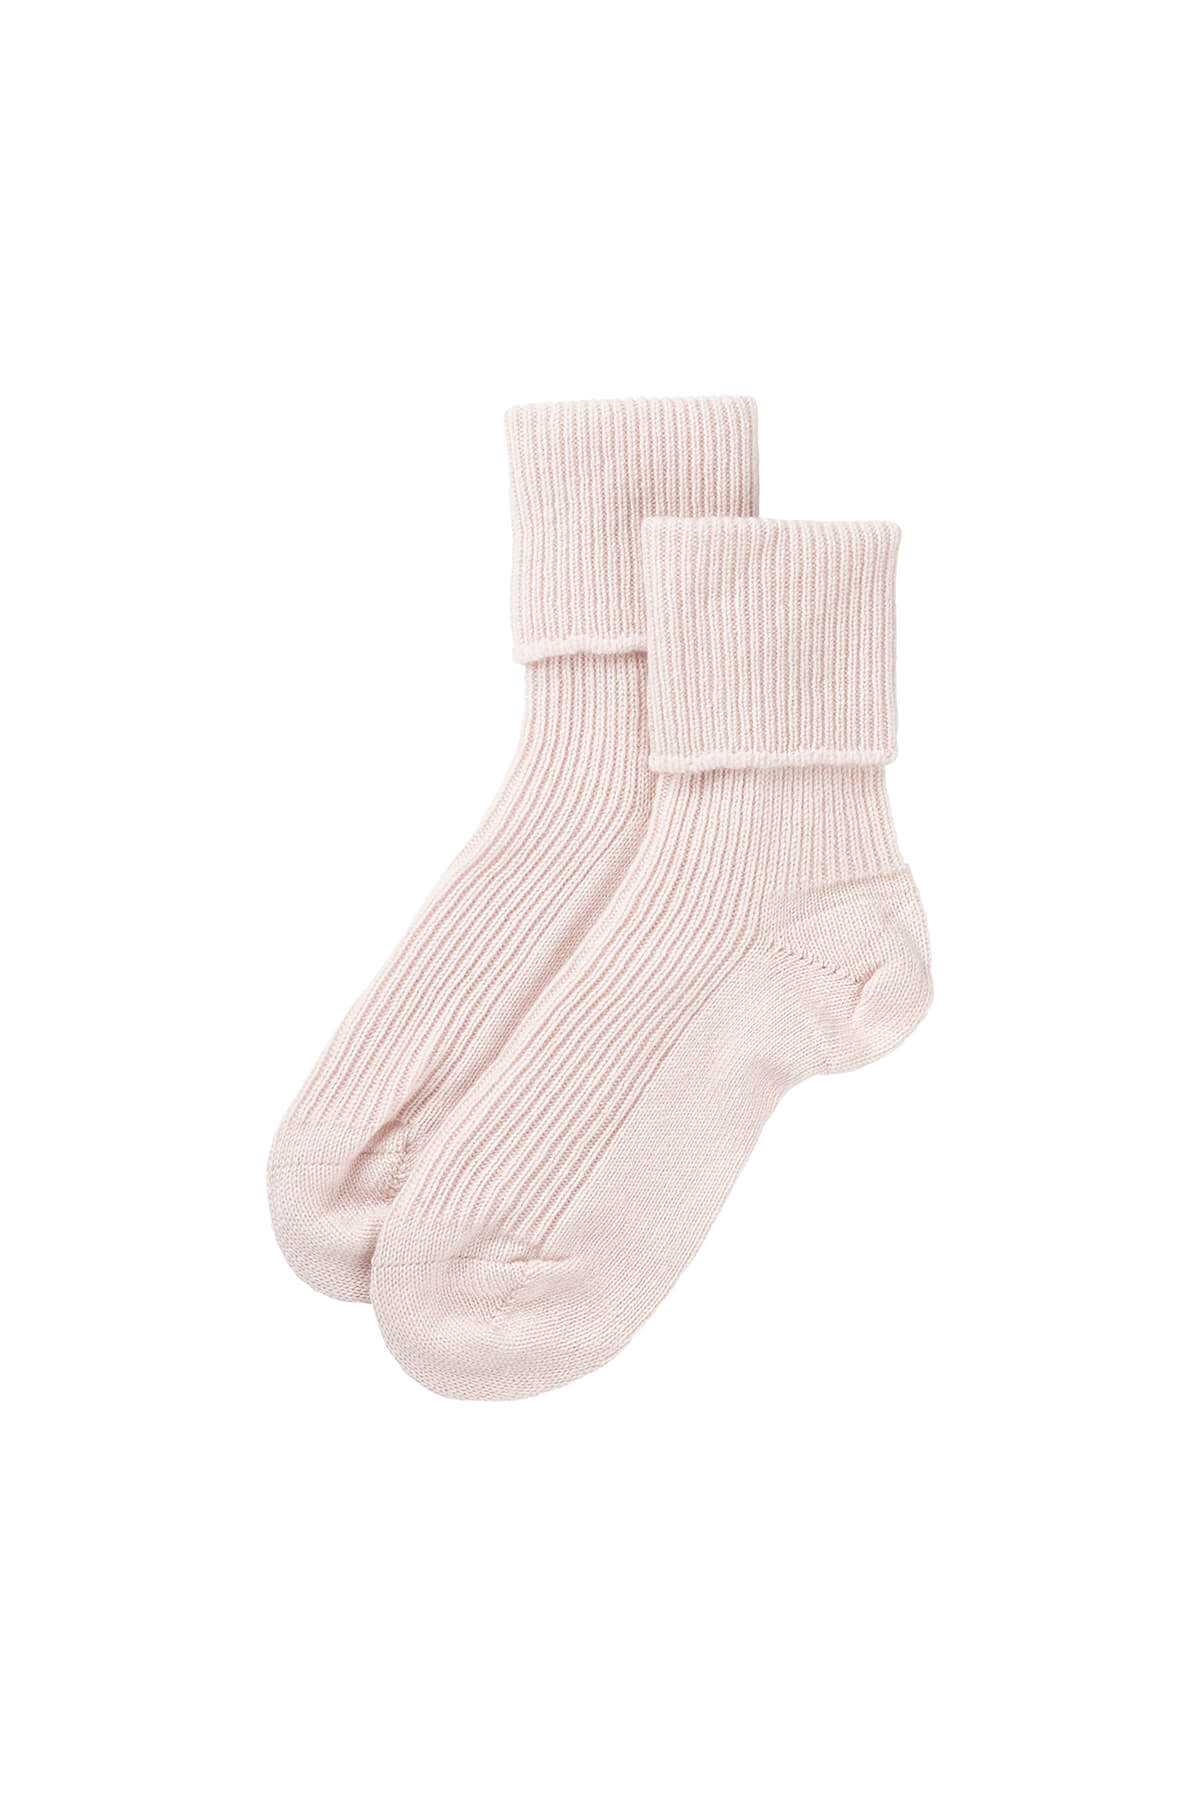 Bed Socks - Cashmere